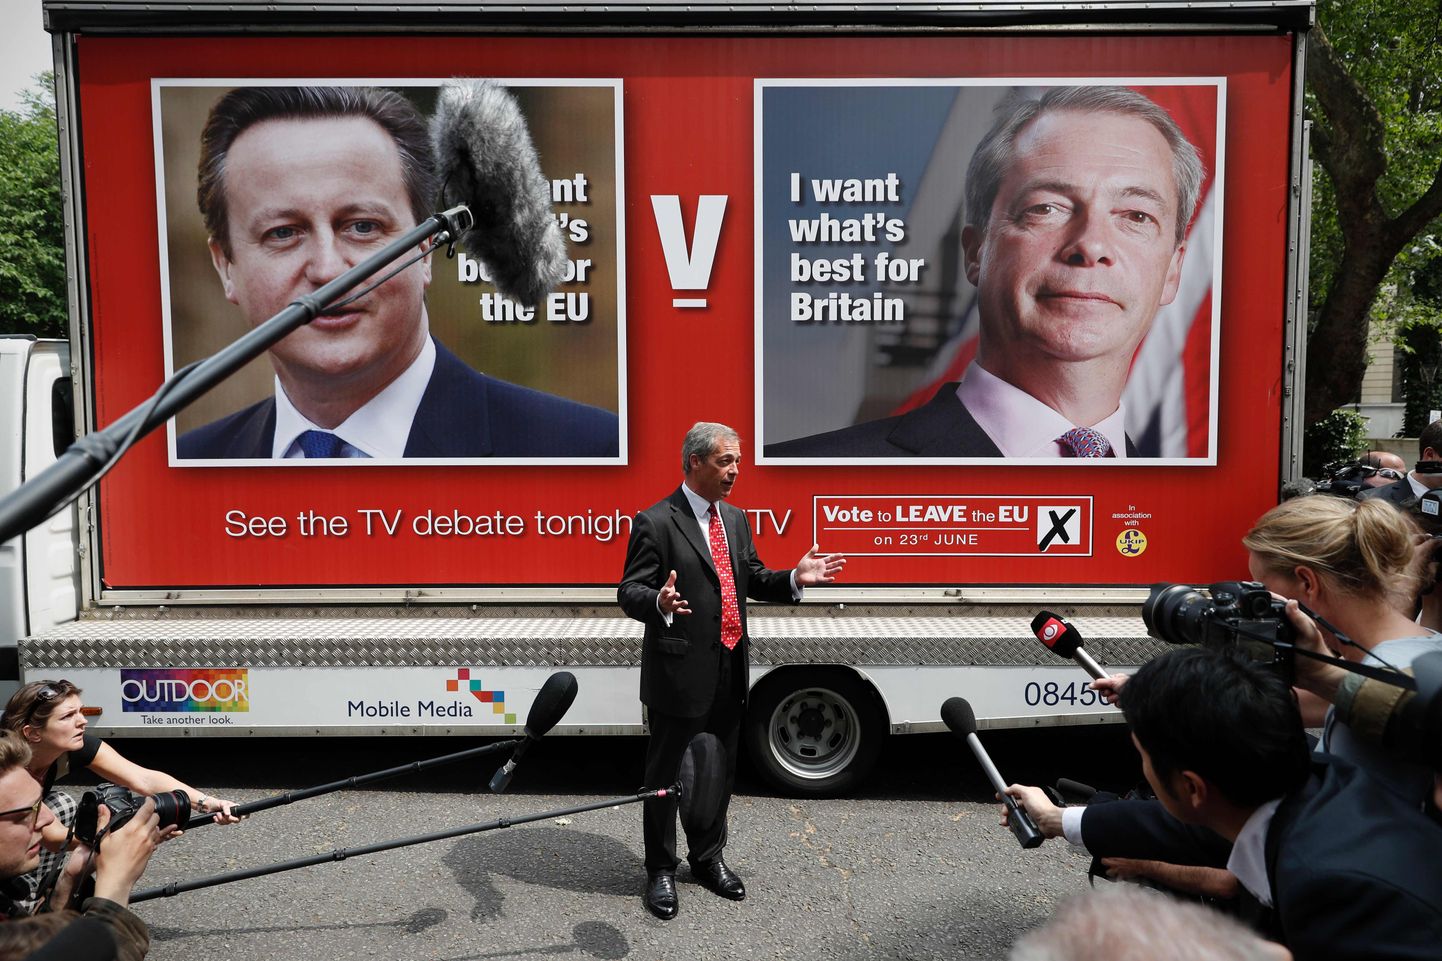 Ühendkuningriigi Euroopa Liidust lahkumise pooldaja, Iseseisvuspartei (UKIP) juht Nigel Farage rõhutas teledebati eel üles riputatud plakatitel, et tema seisab oma riigi ja peaminister David Cameron Euroopa Liidu eest.